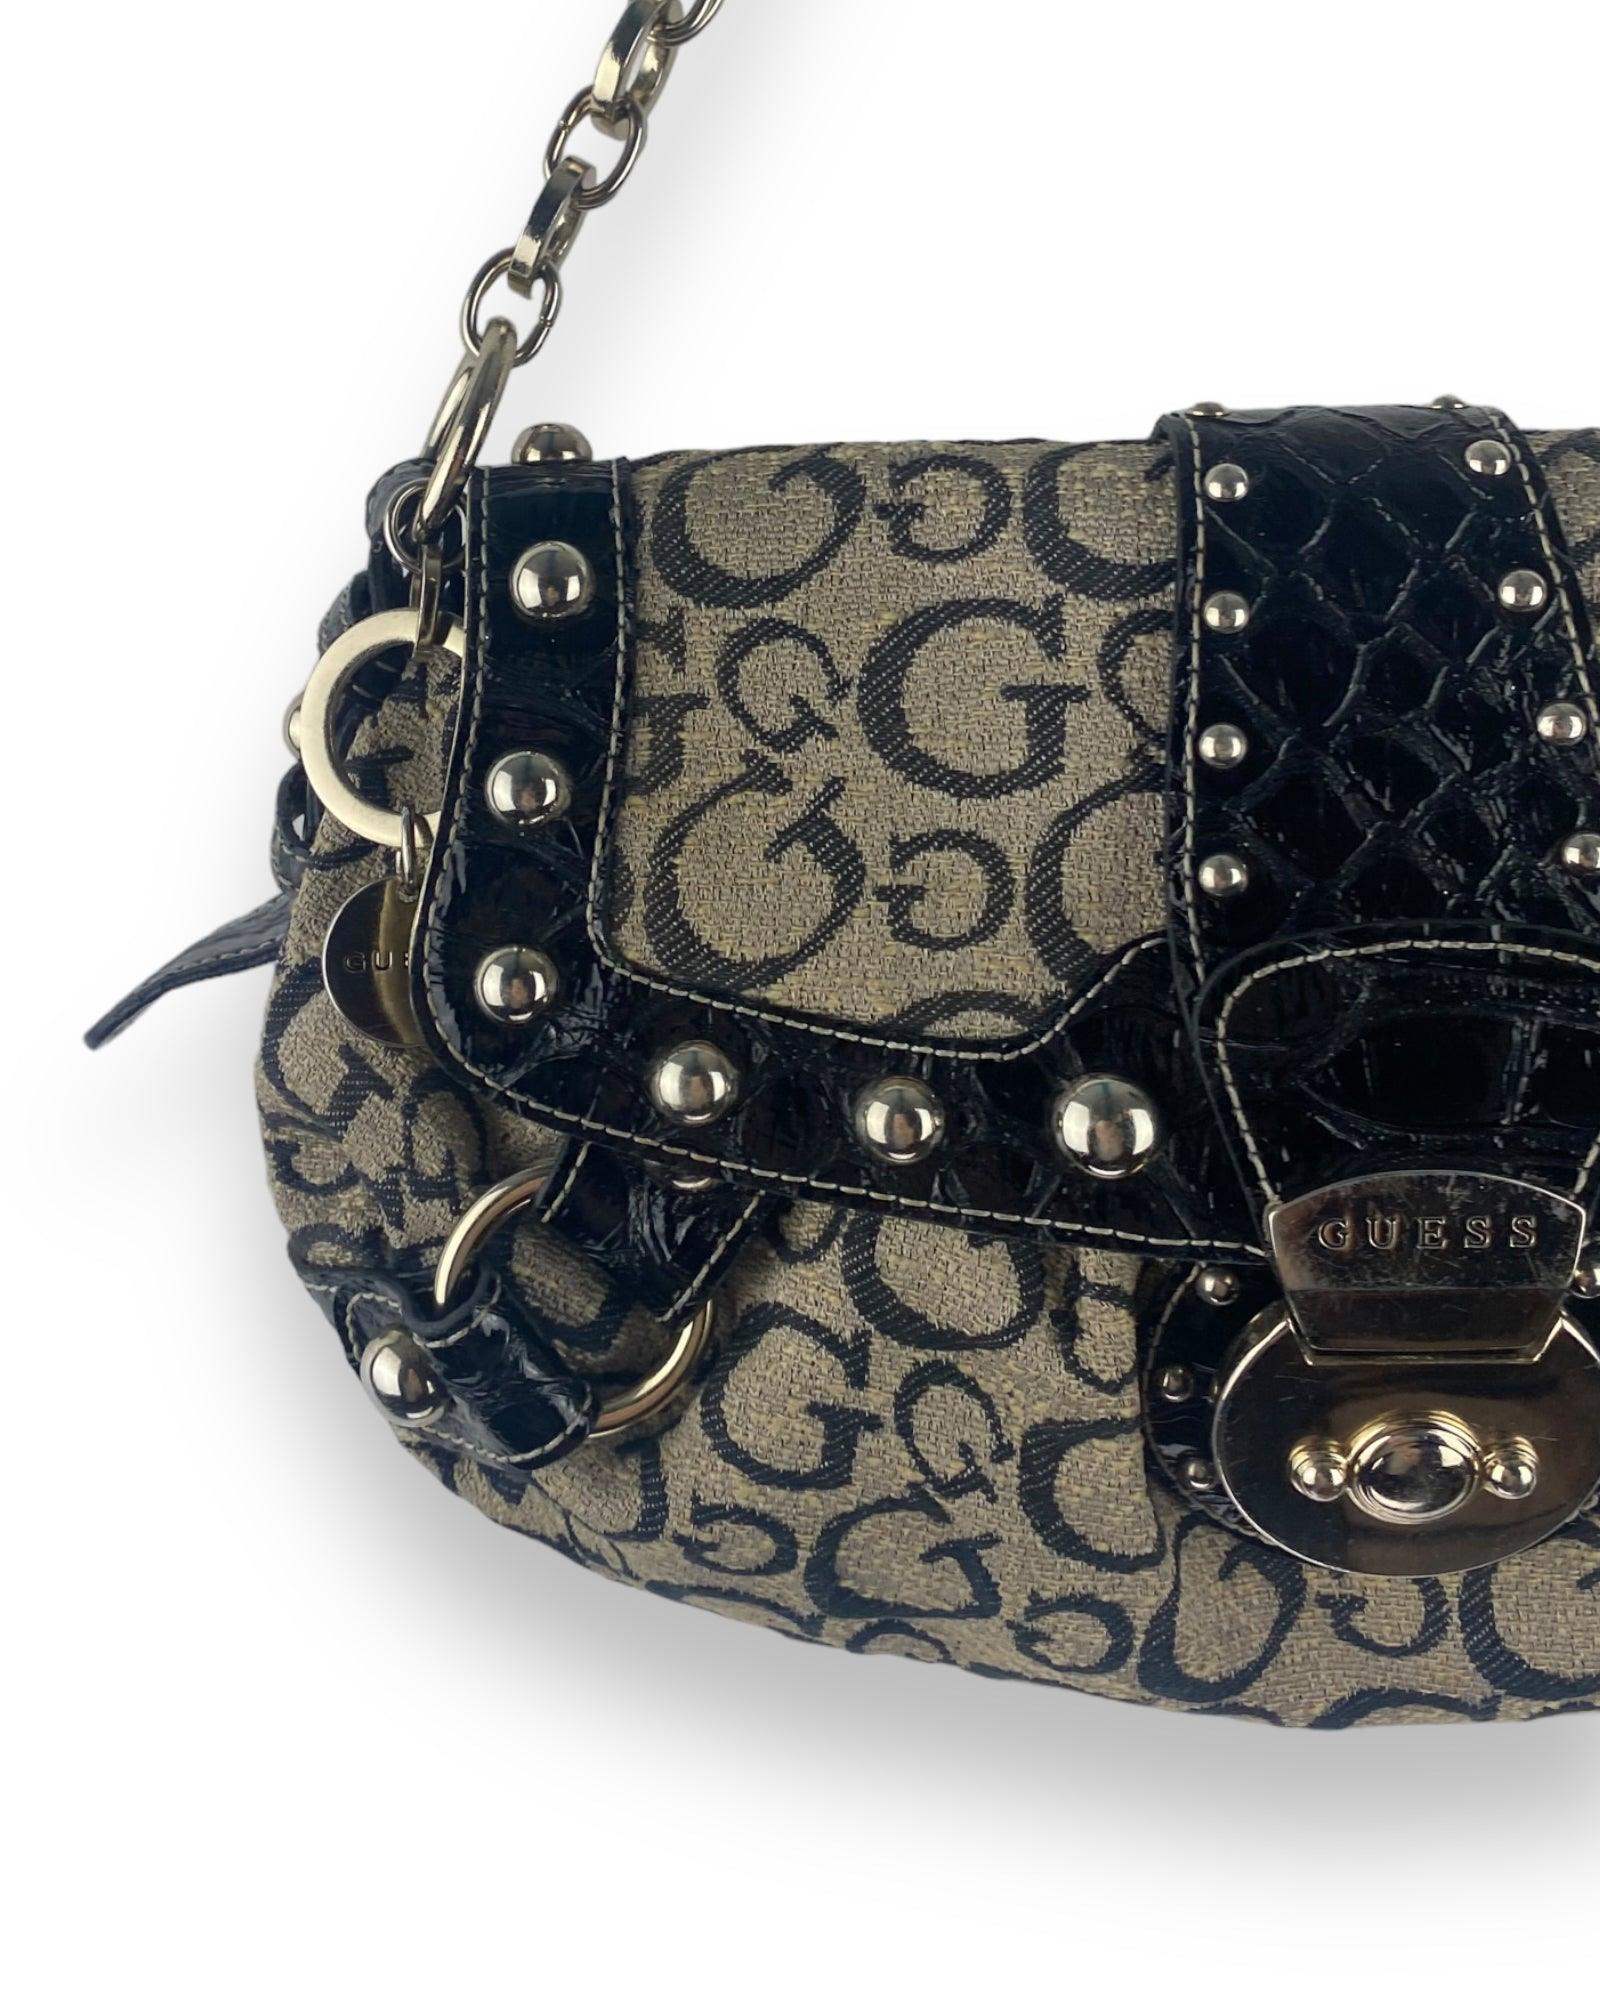 Guess Handbags - Allure Online Shop